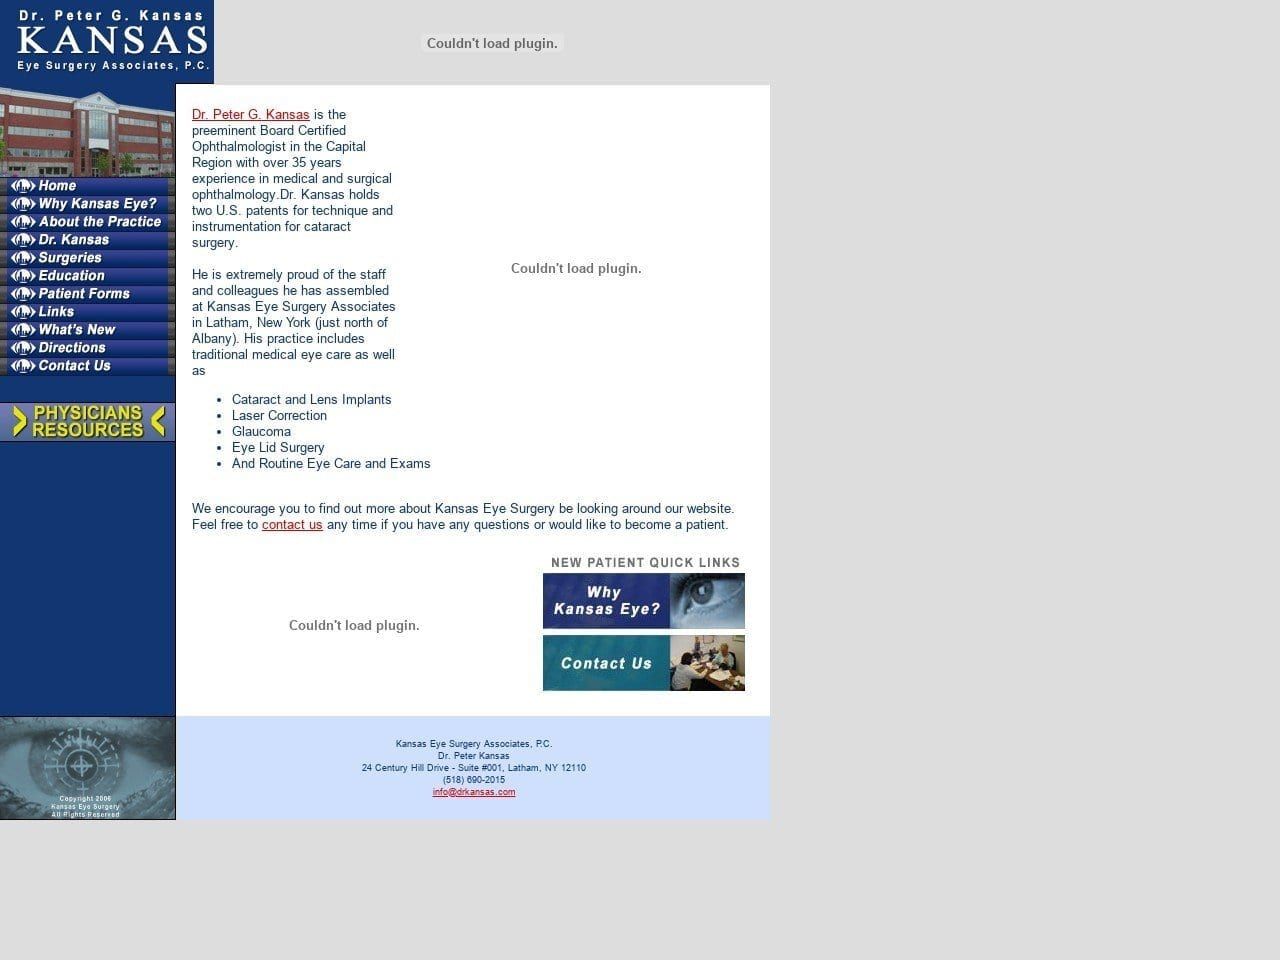 Kansas Eye Surgery Associates Website Screenshot from drkansas.com